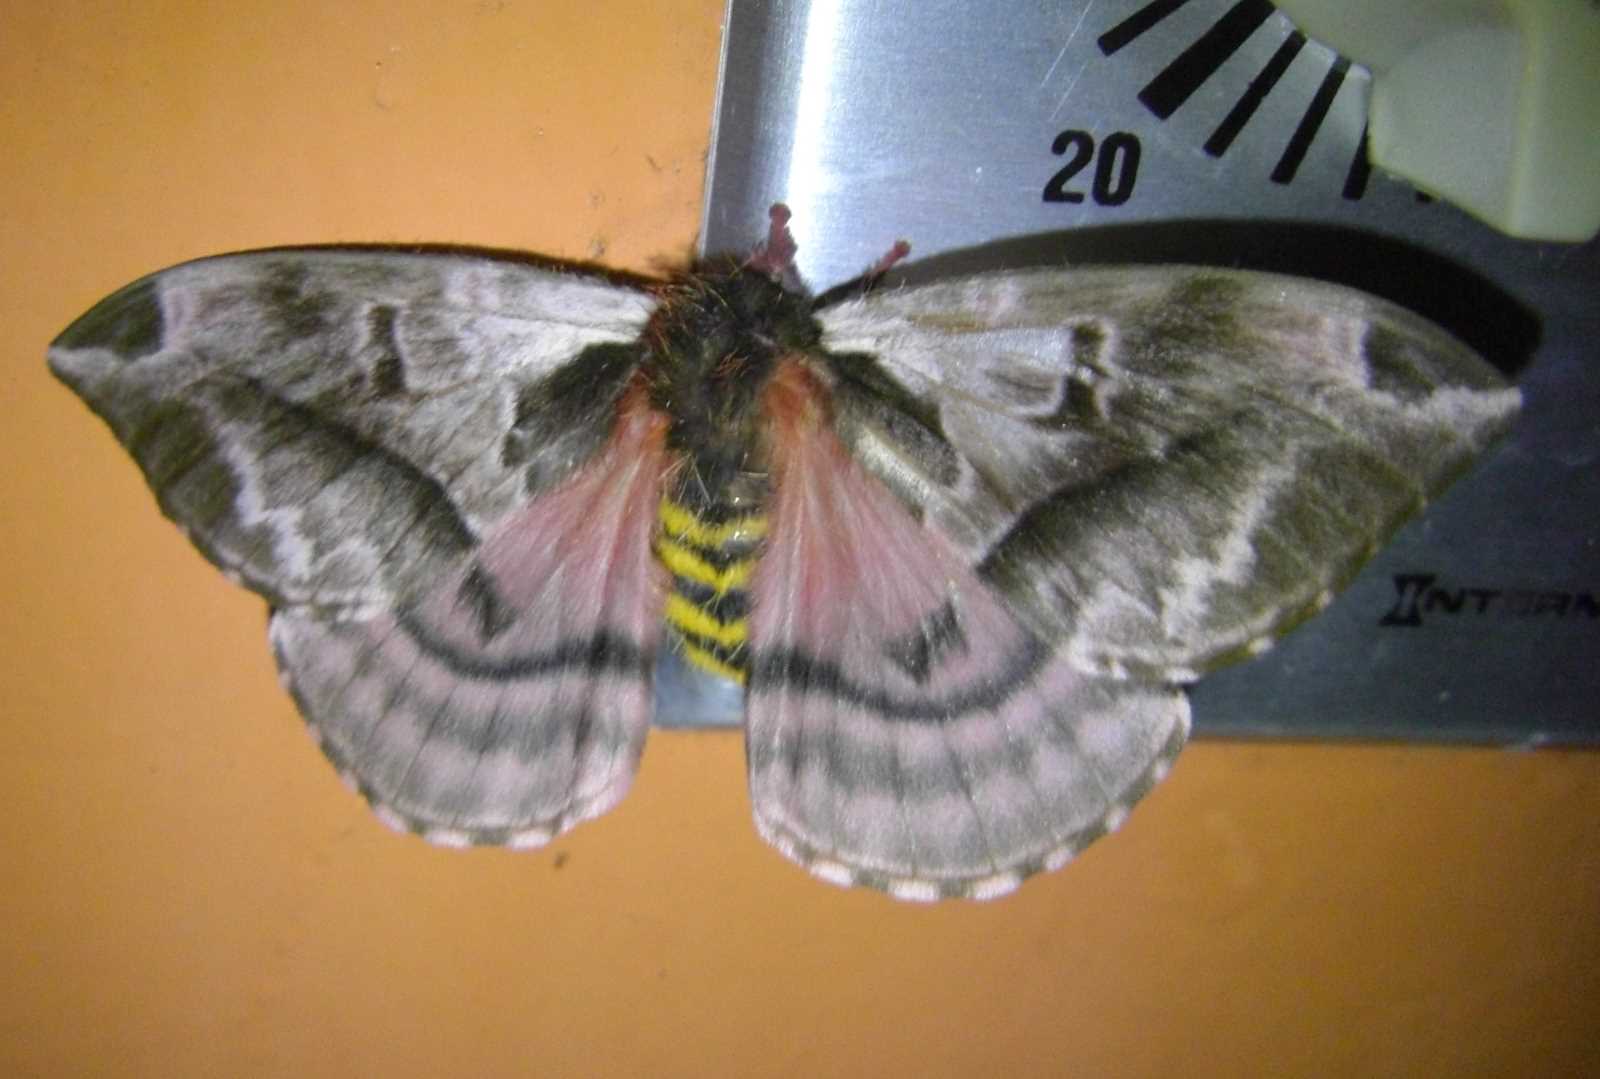 CIMG12
26cr  moth
